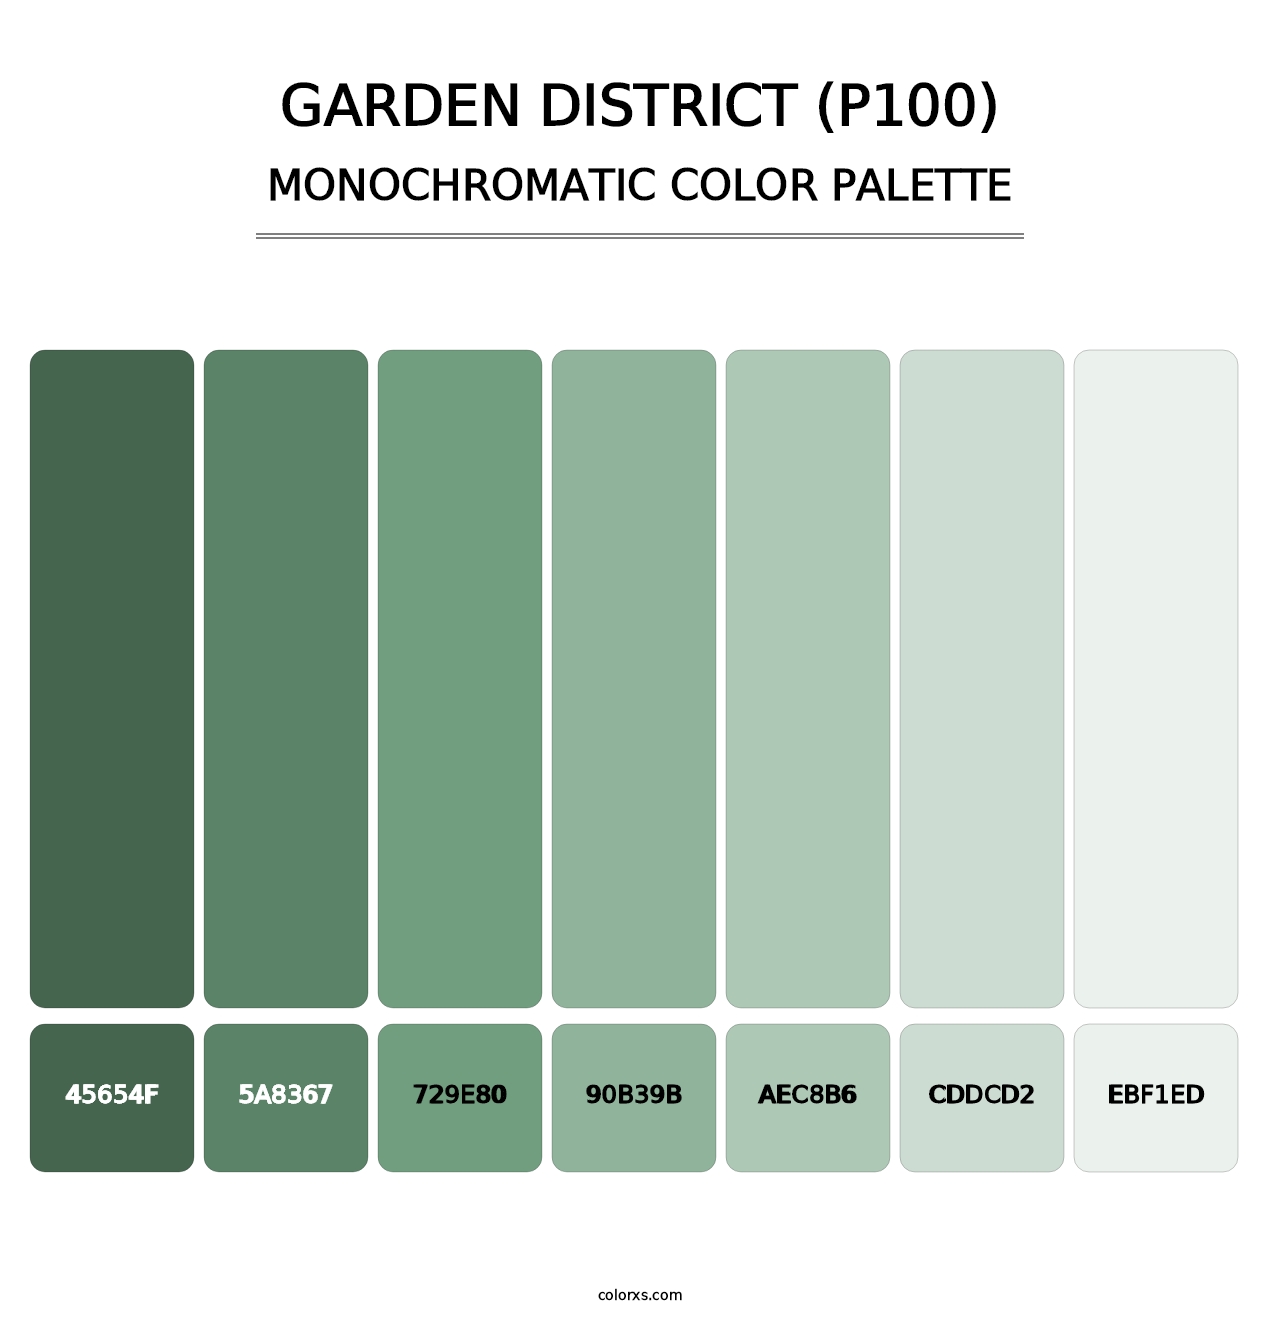 Garden District (P100) - Monochromatic Color Palette